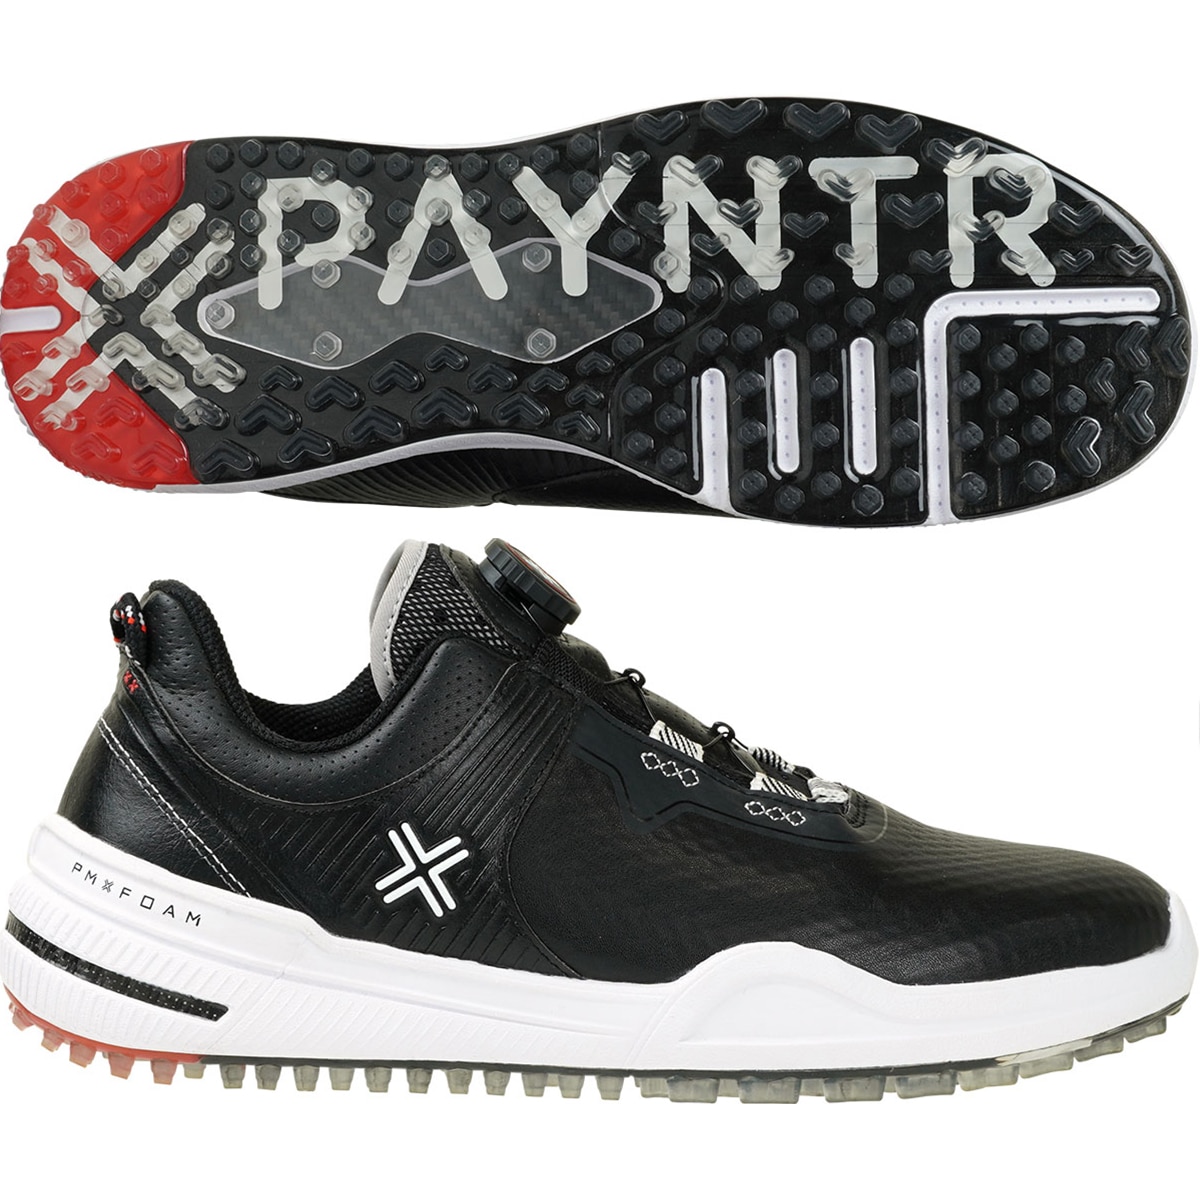 Payntr X 002 FF ゴルフシューズ(ゴルフシューズ)